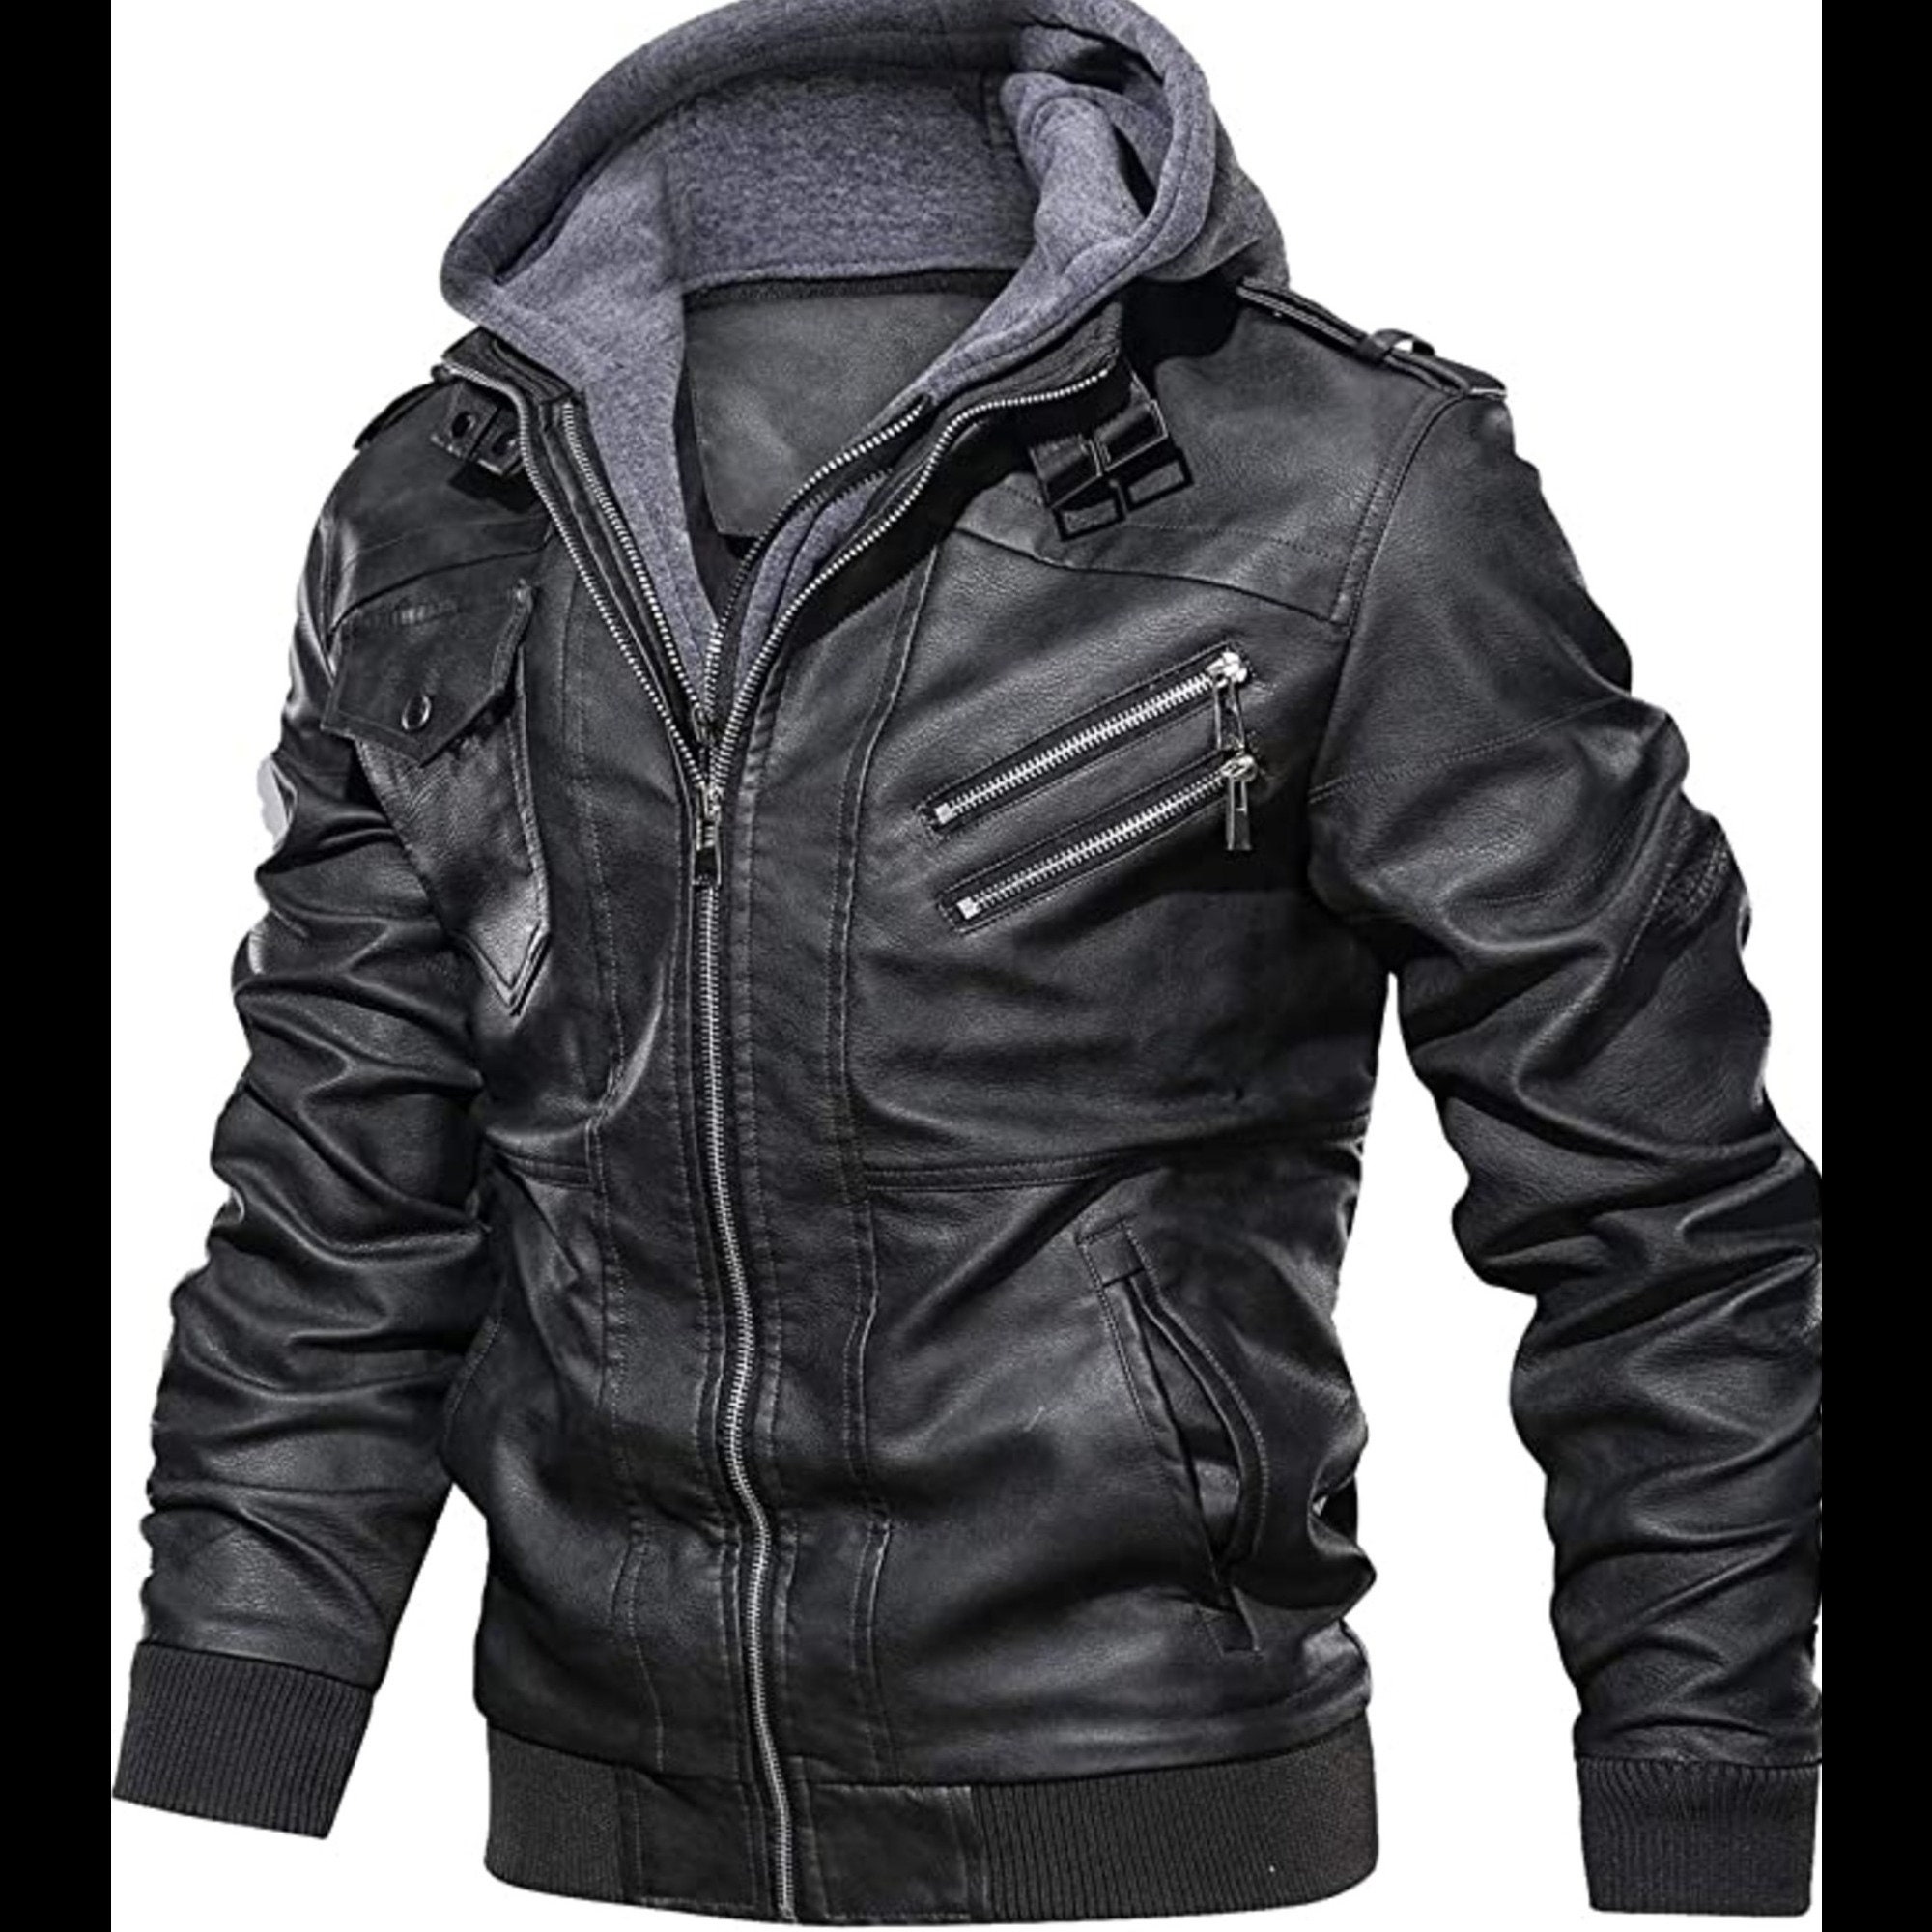 Leather Jacket Hooded Men Black Genuine Leather Biker Jacket - Etsy